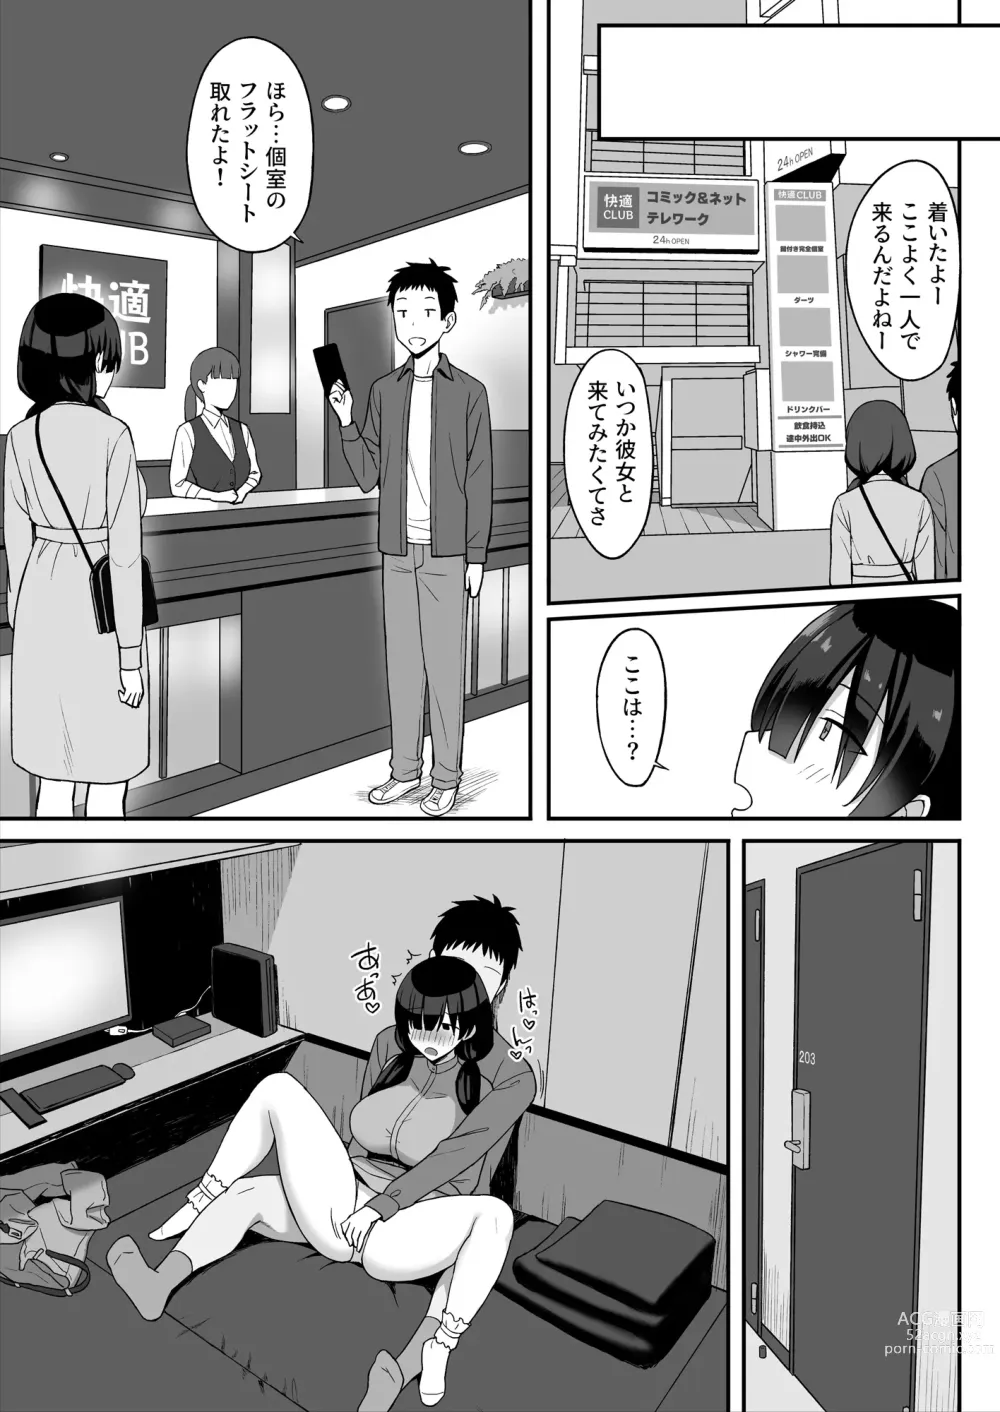 Page 29 of doujinshi 地味巨乳のストーカー女に告白されたのでヤりまくってみた話